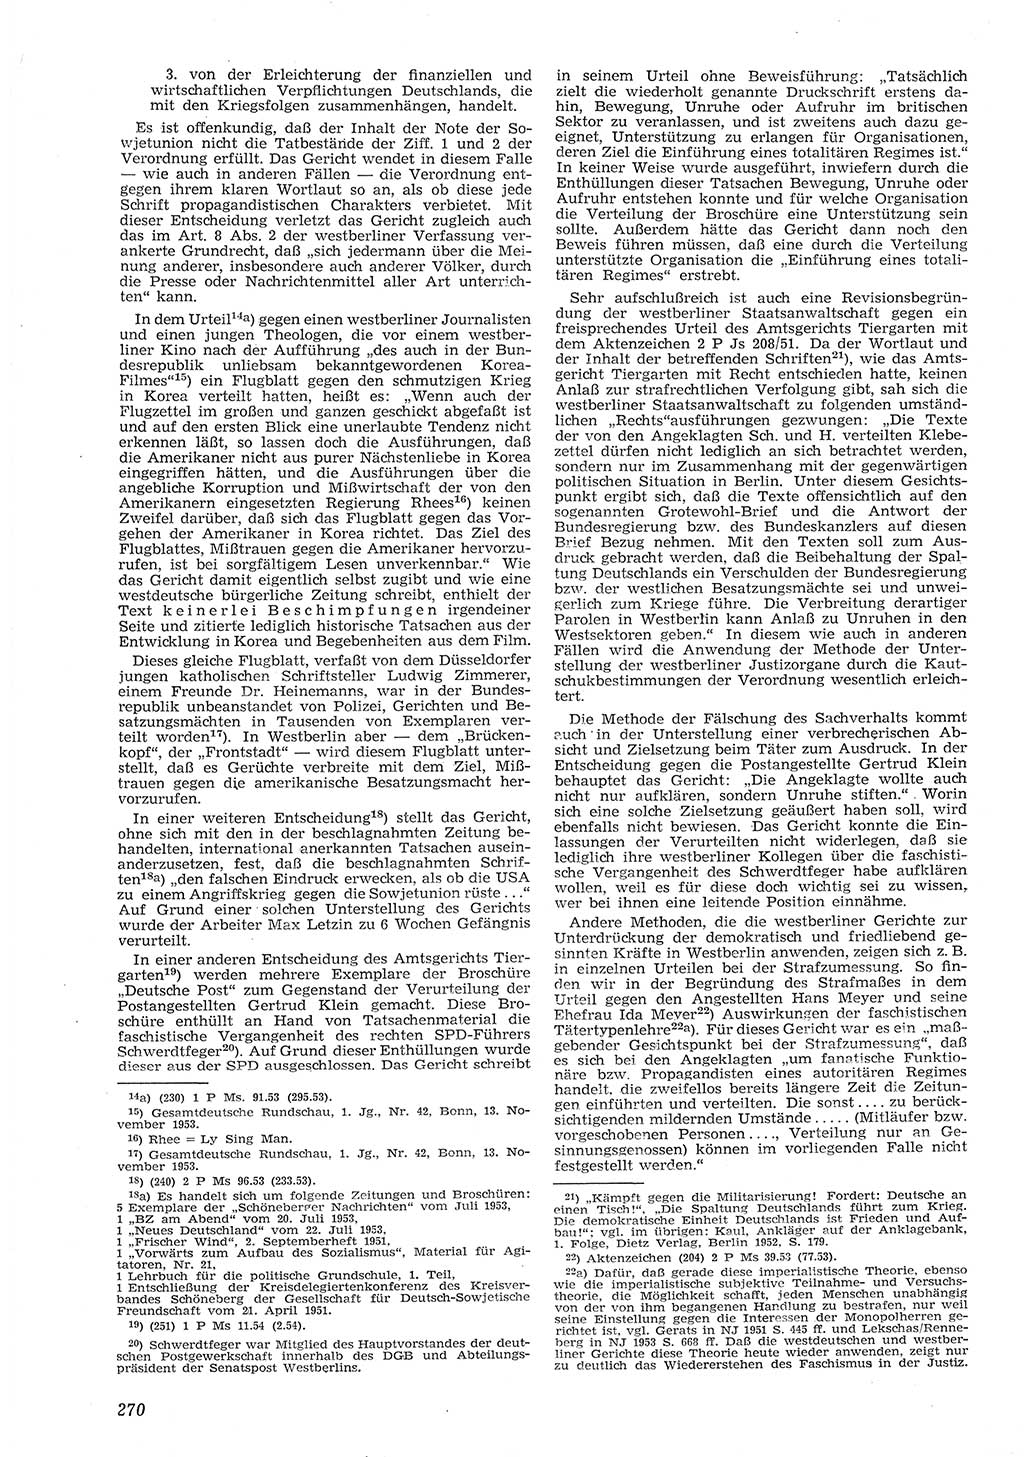 Neue Justiz (NJ), Zeitschrift für Recht und Rechtswissenschaft [Deutsche Demokratische Republik (DDR)], 8. Jahrgang 1954, Seite 270 (NJ DDR 1954, S. 270)